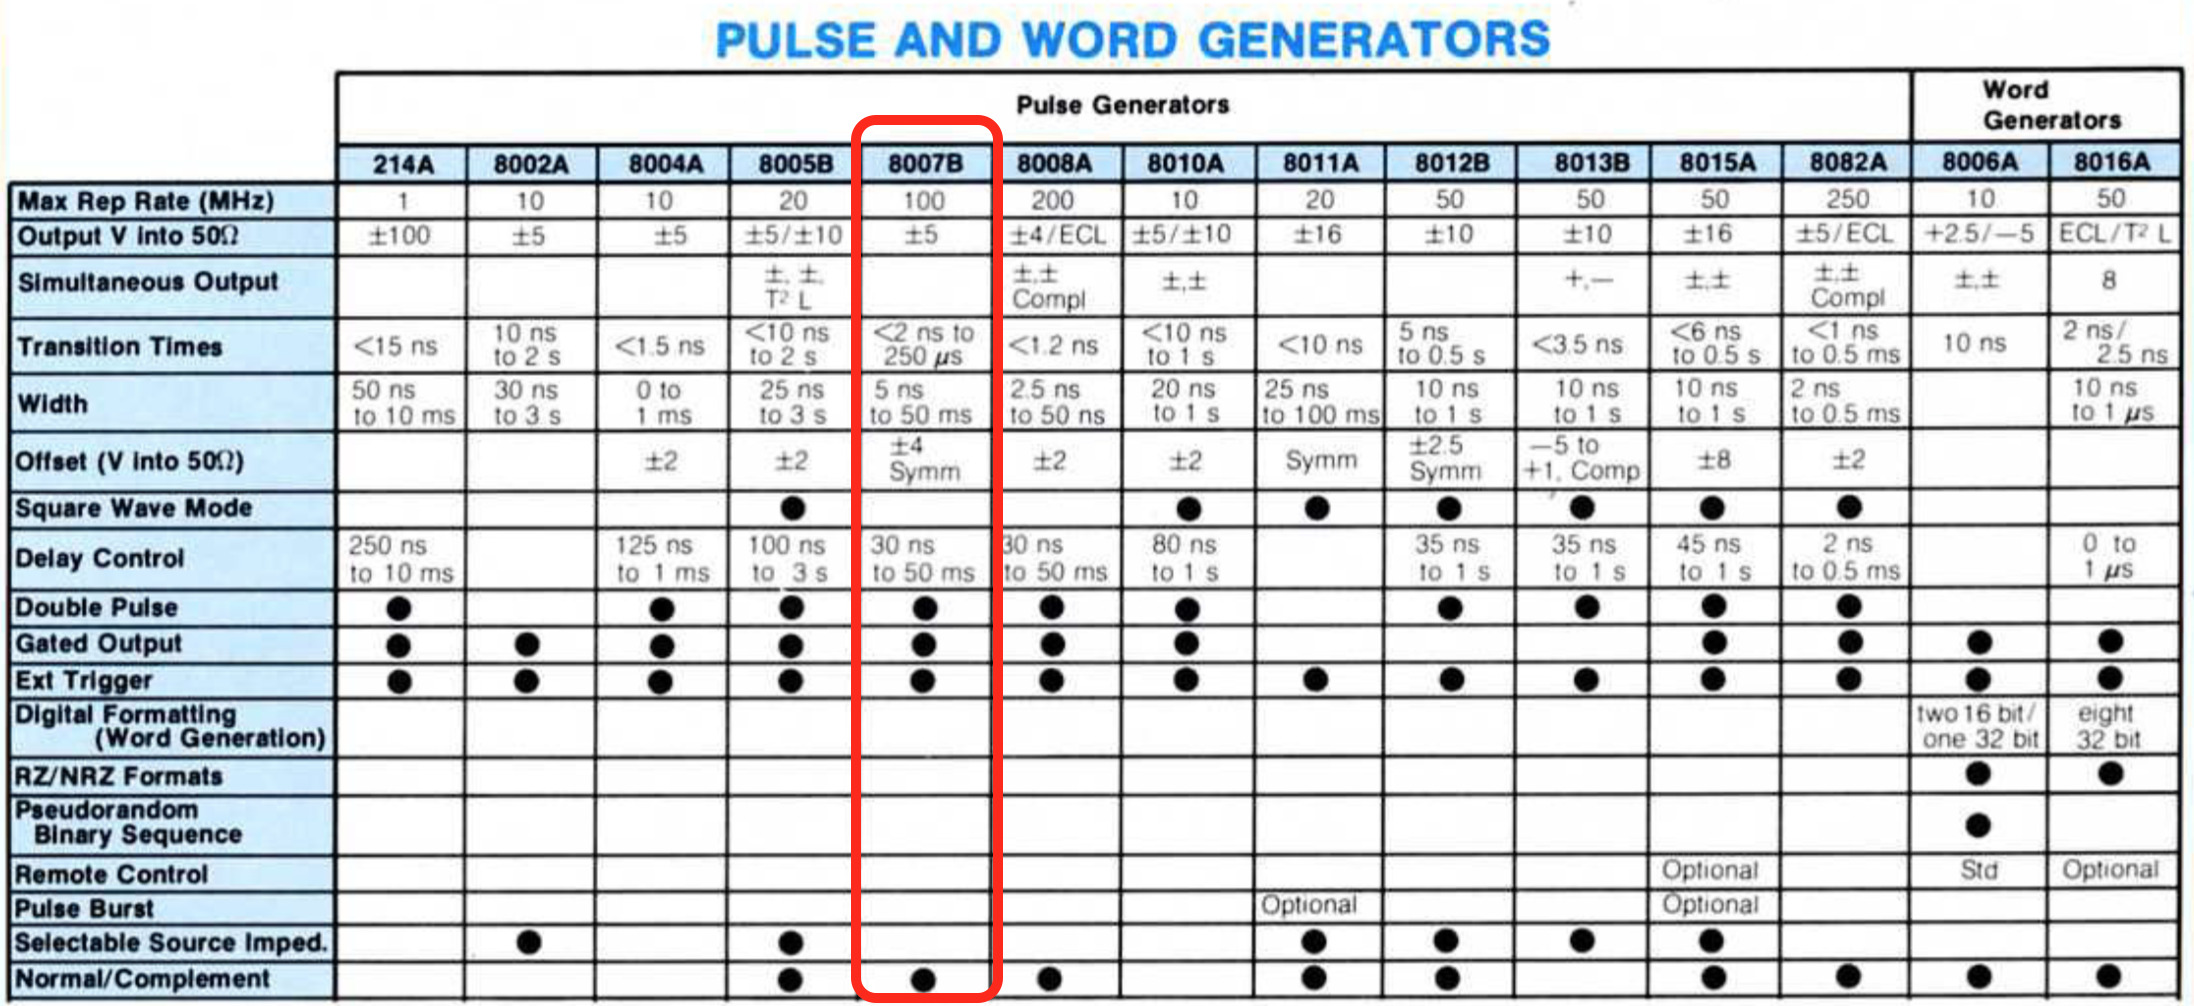 Pulse generator comparison table